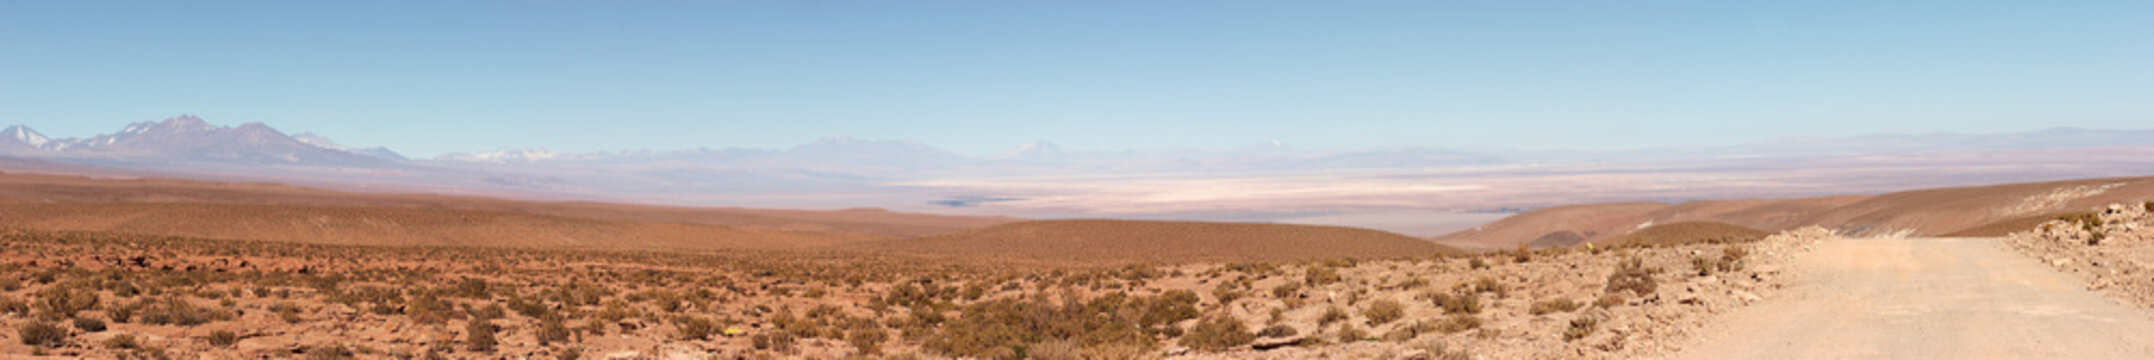 Salar de Atacama panorama, Chile